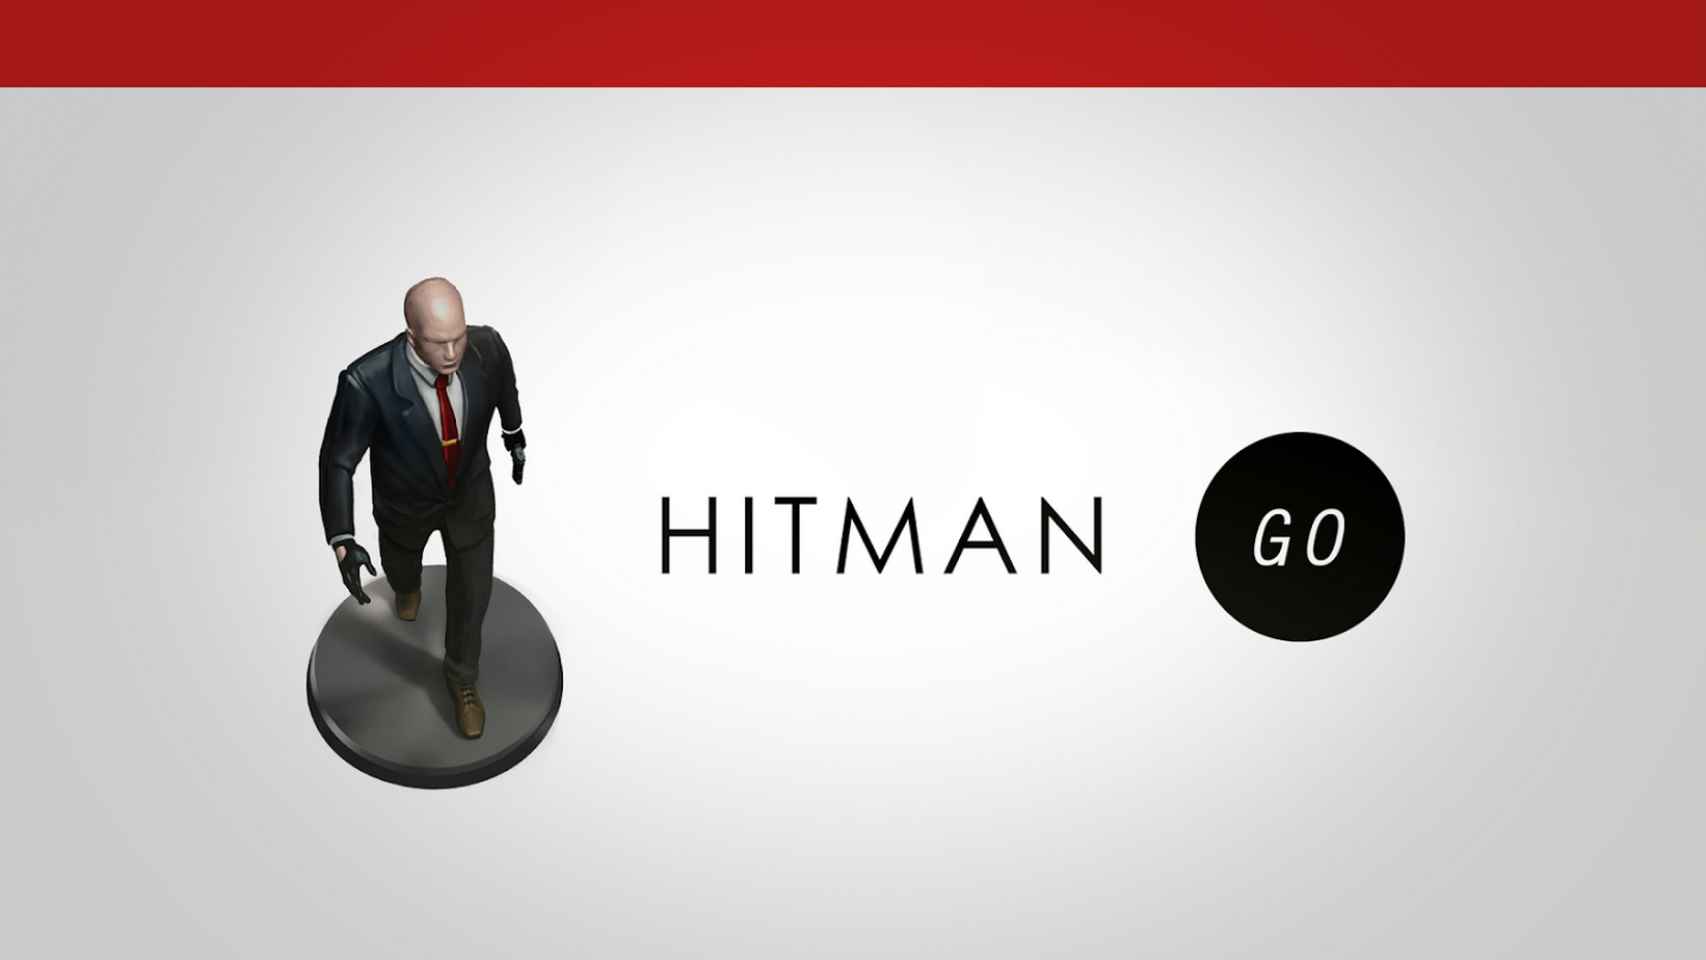 Hitman GO, el juego de estrategia del Agente 47 ya disponible en Android